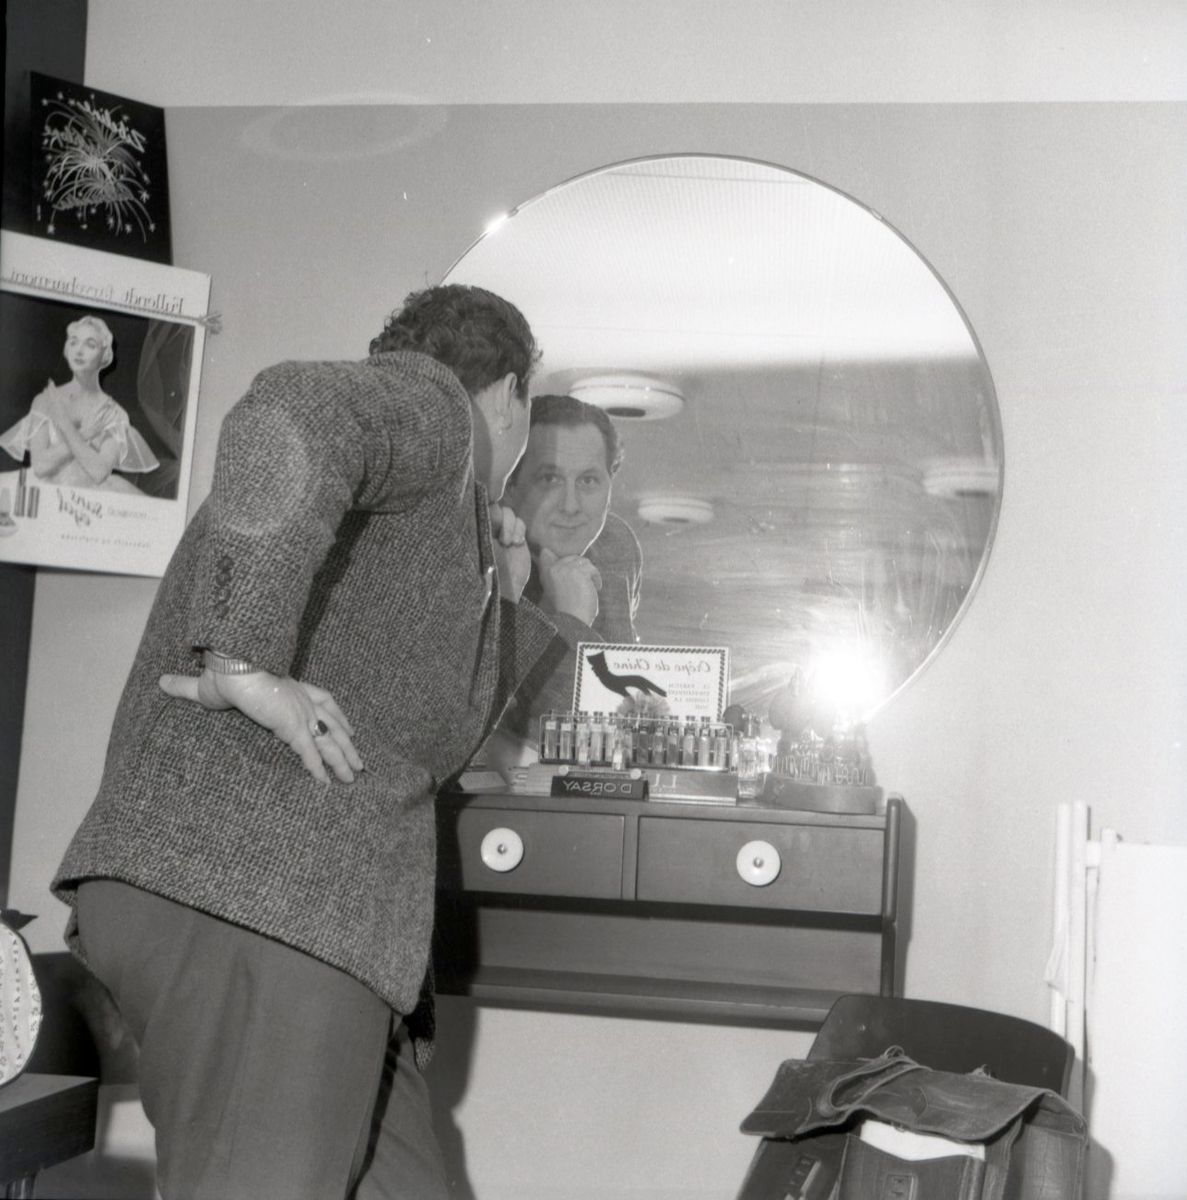 Mann poserer i frisørsalong. 1960-70.